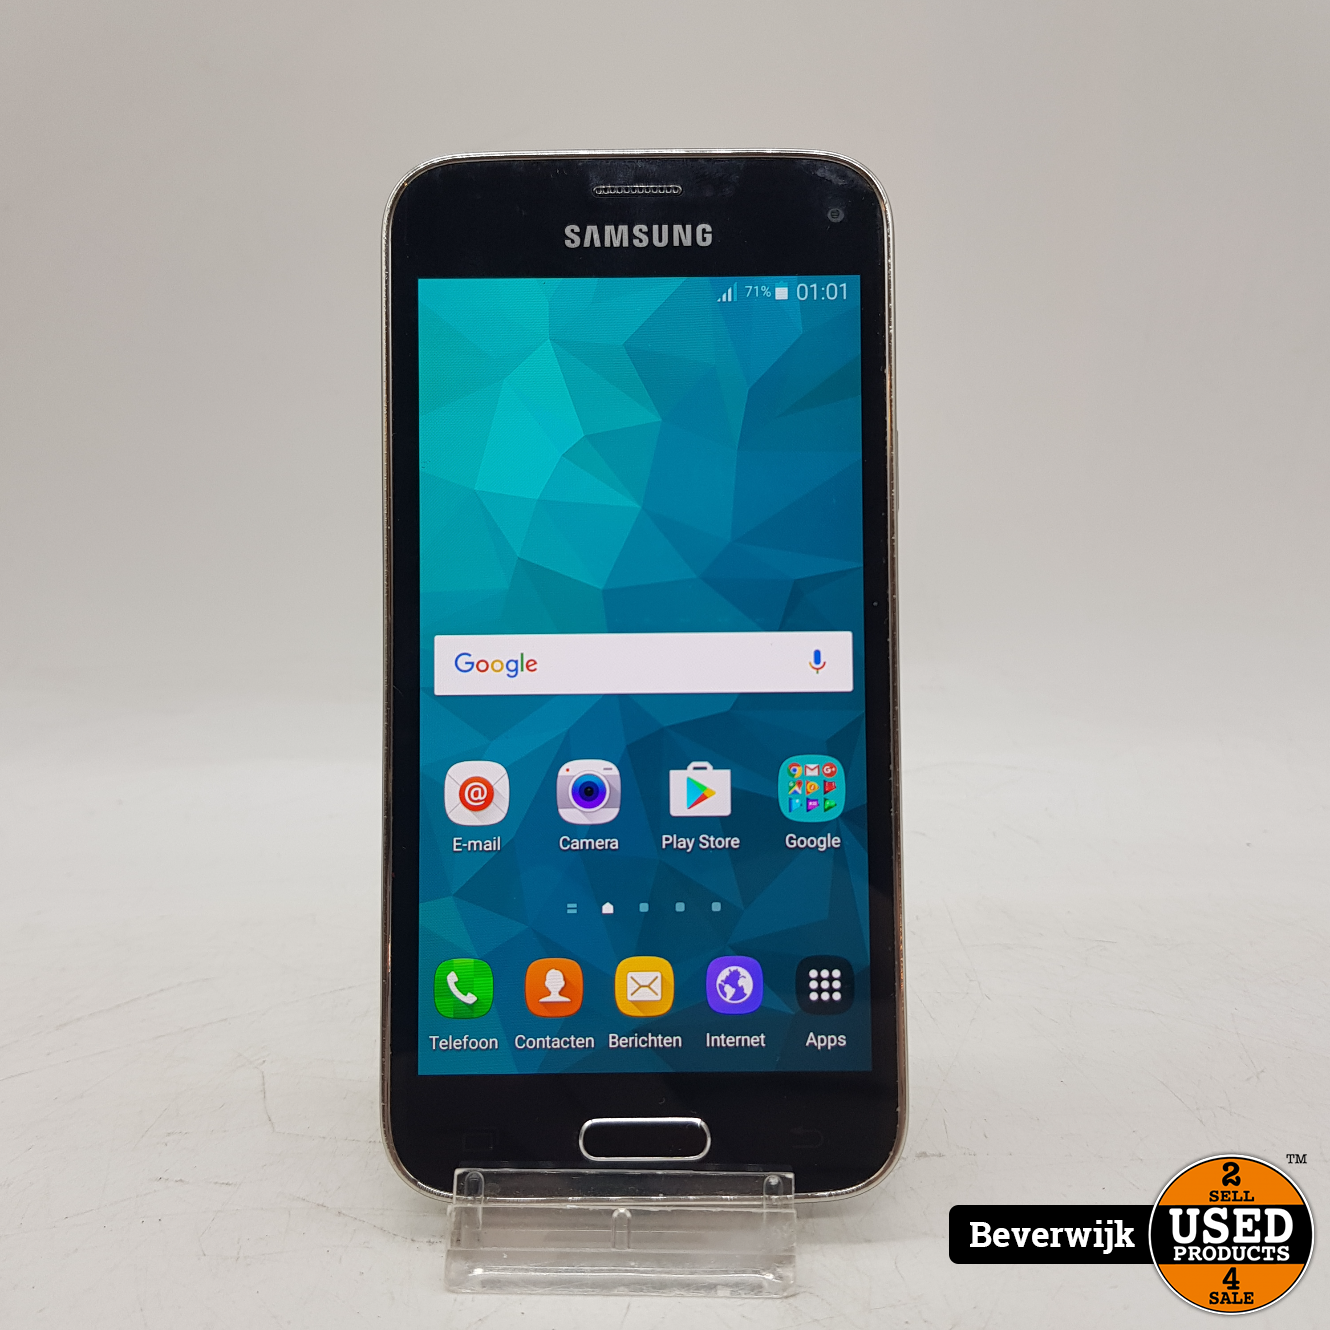 Implementeren Intensief Egypte Samsung Galaxy S5 Mini 8 Gb - In Goede Staat - Used Products Beverwijk